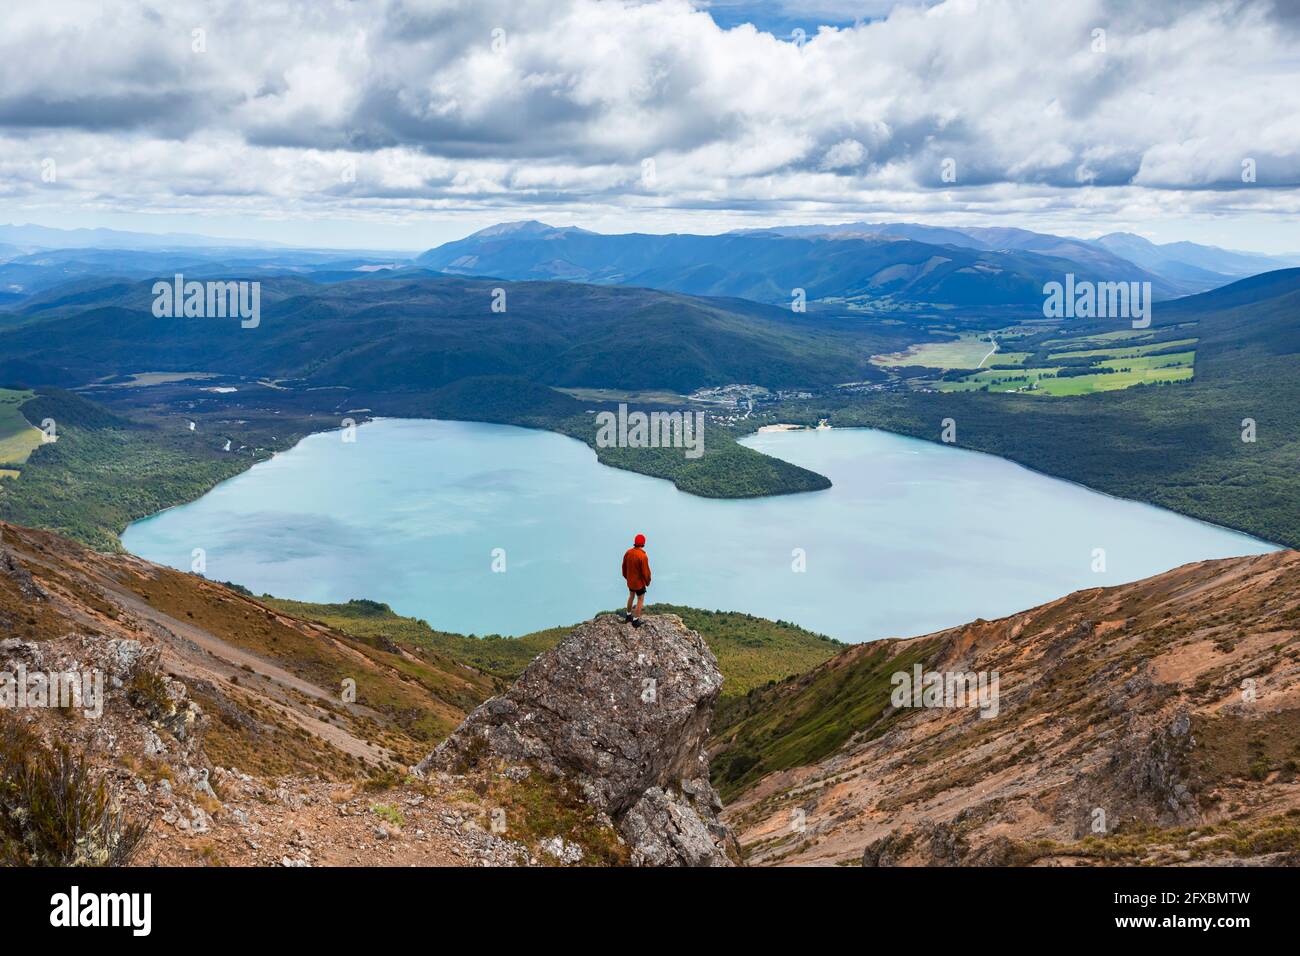 Neuseeland, Tasman District, männlicher Wanderer, der auf einer Felsformation mit Blick auf den malerischen Lake Rotoiti steht Stockfoto